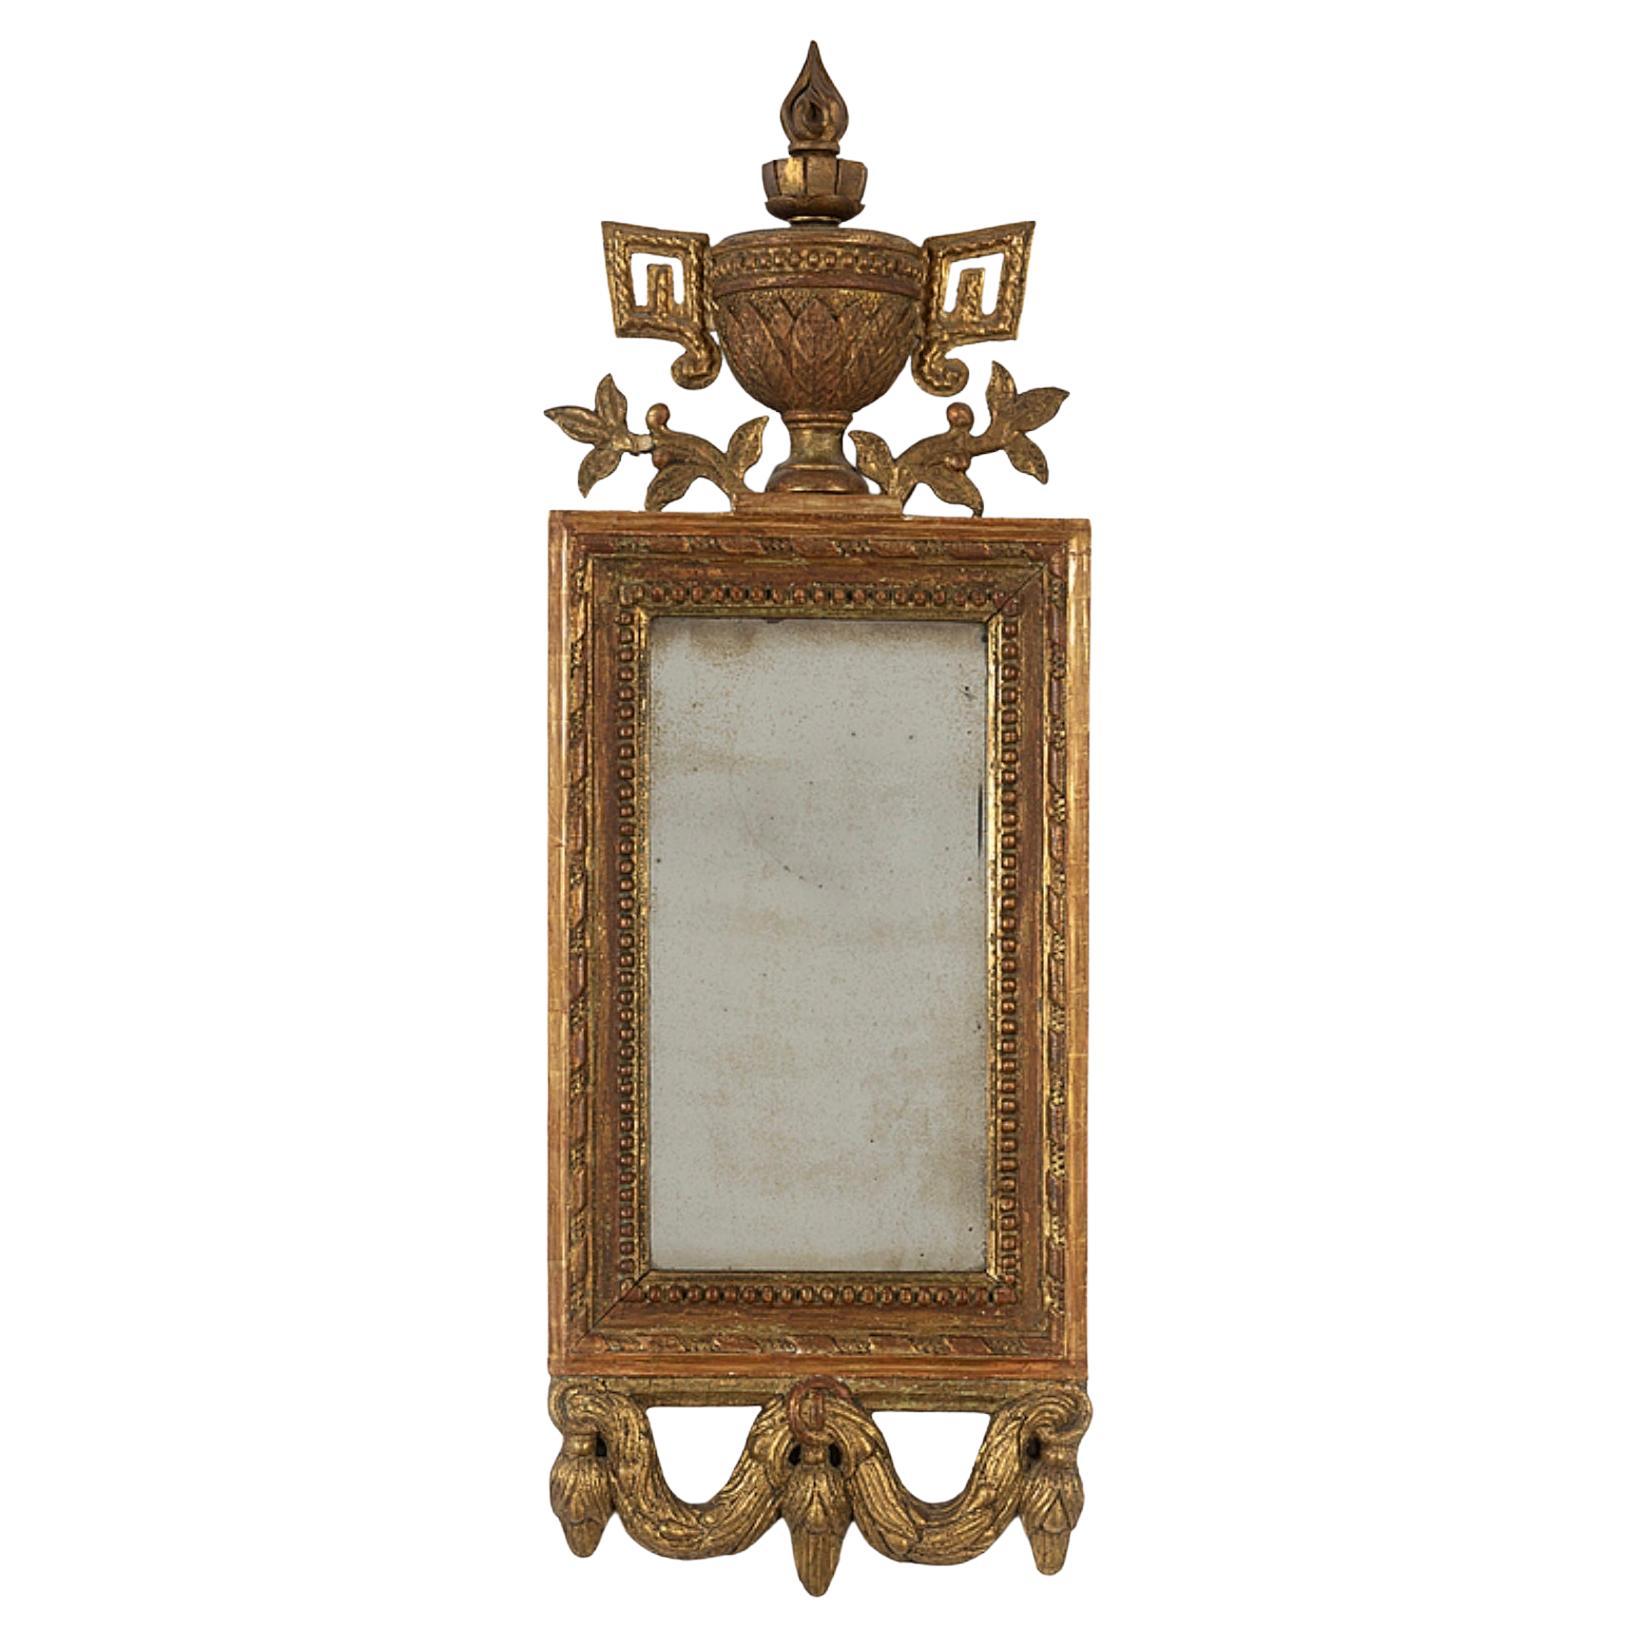 Circa 18th Century Swedish Gilt Mirror with Urn & Swag Decoration (miroir doré suédois avec décor d'urne et de guirlande) 